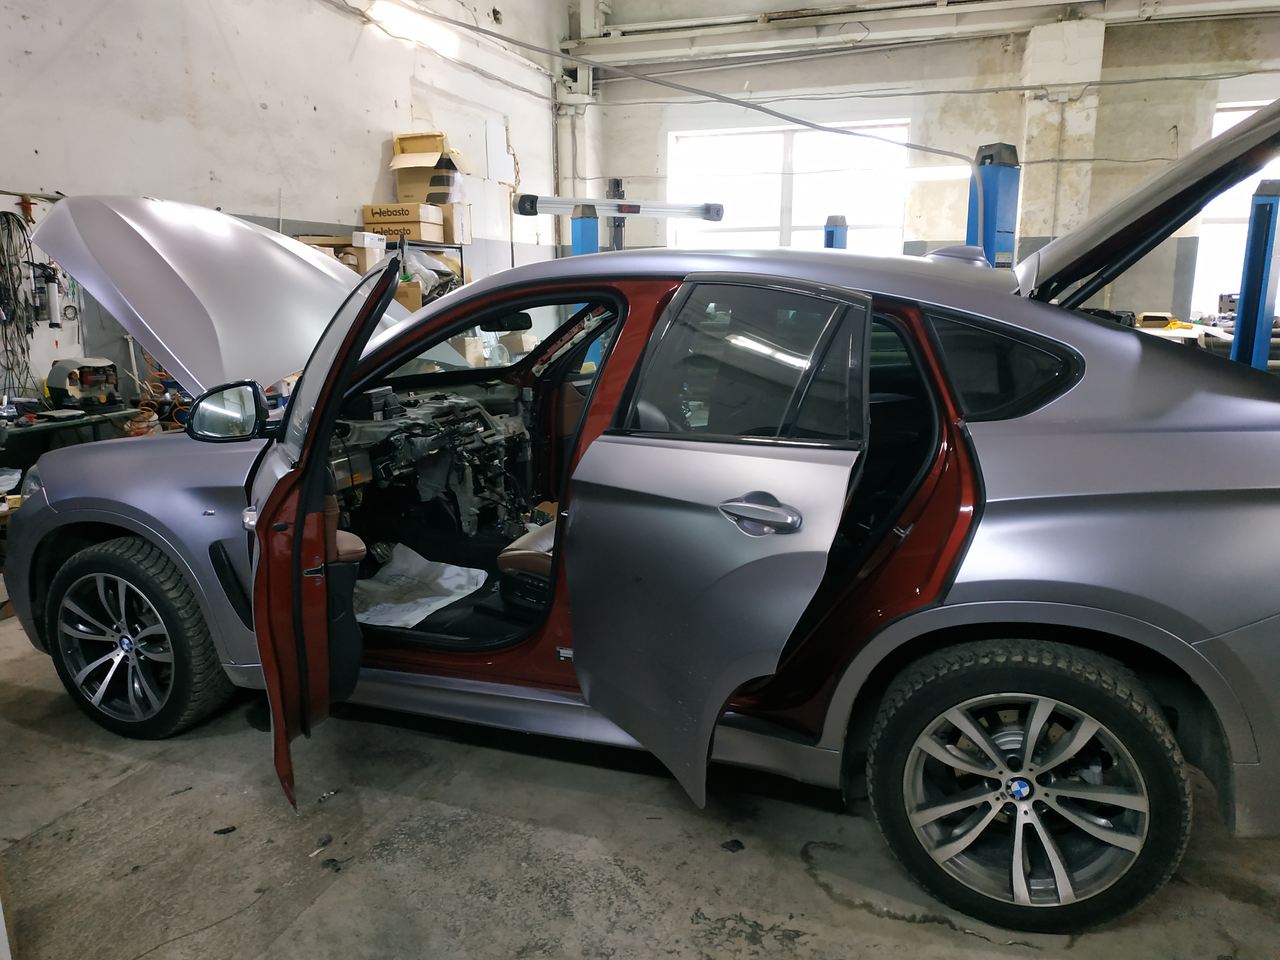 BMW Х6 F16 30d 2016 г.в. в автосервисе BMWupgrade Екатеринбург